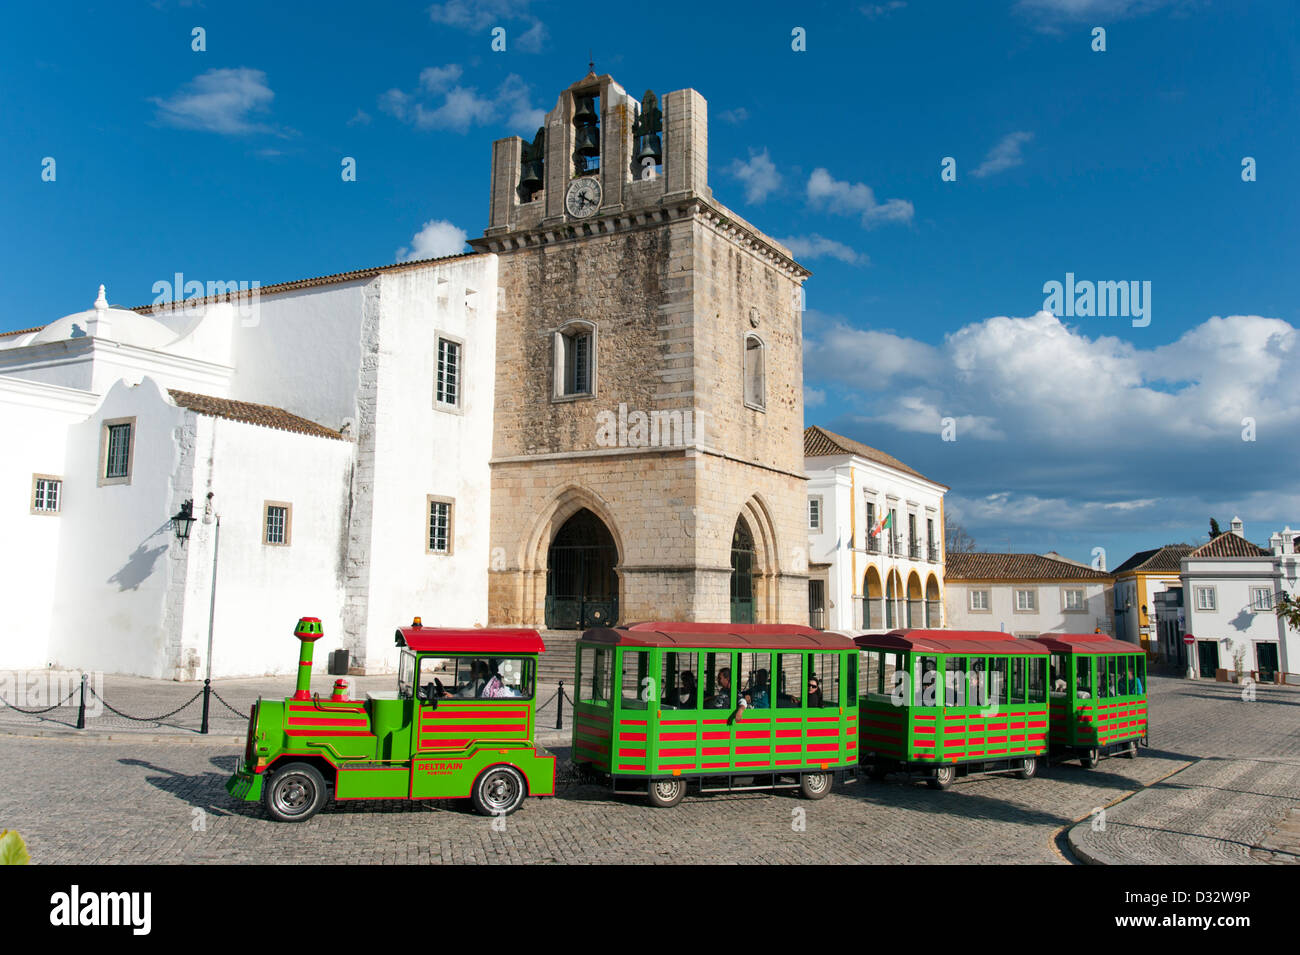 Relations sérieuses in tourisme train passant devant la cathédrale de Faro, Portugal Banque D'Images